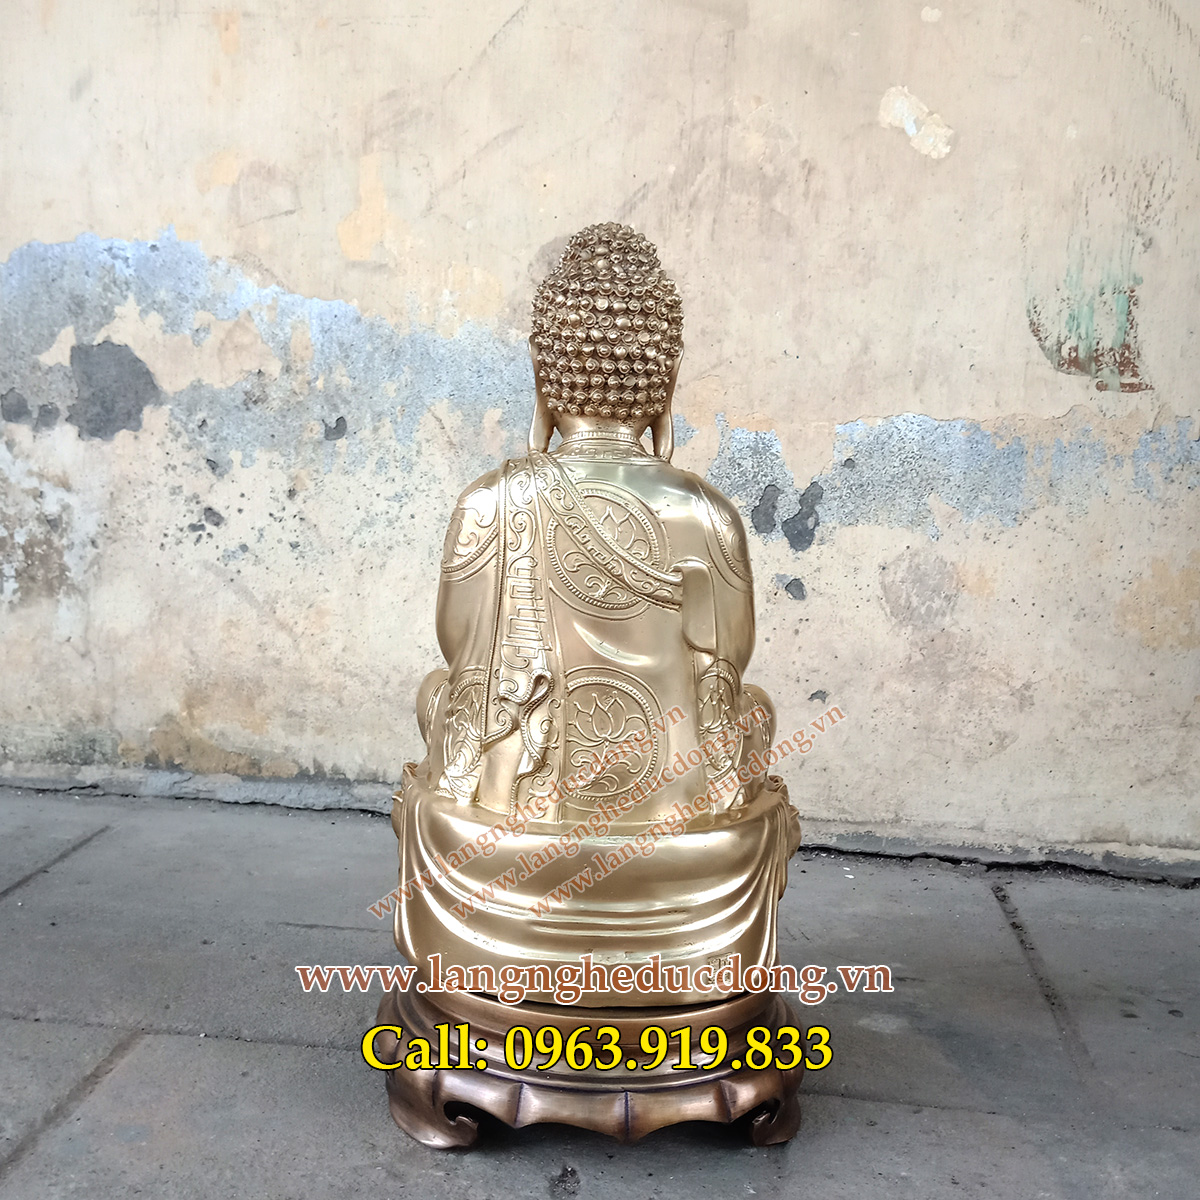 langngheducdong.vn - tượng đồng thờ cúng, tượng phật bằng đồng vàng, tượng phật, tượng đồng